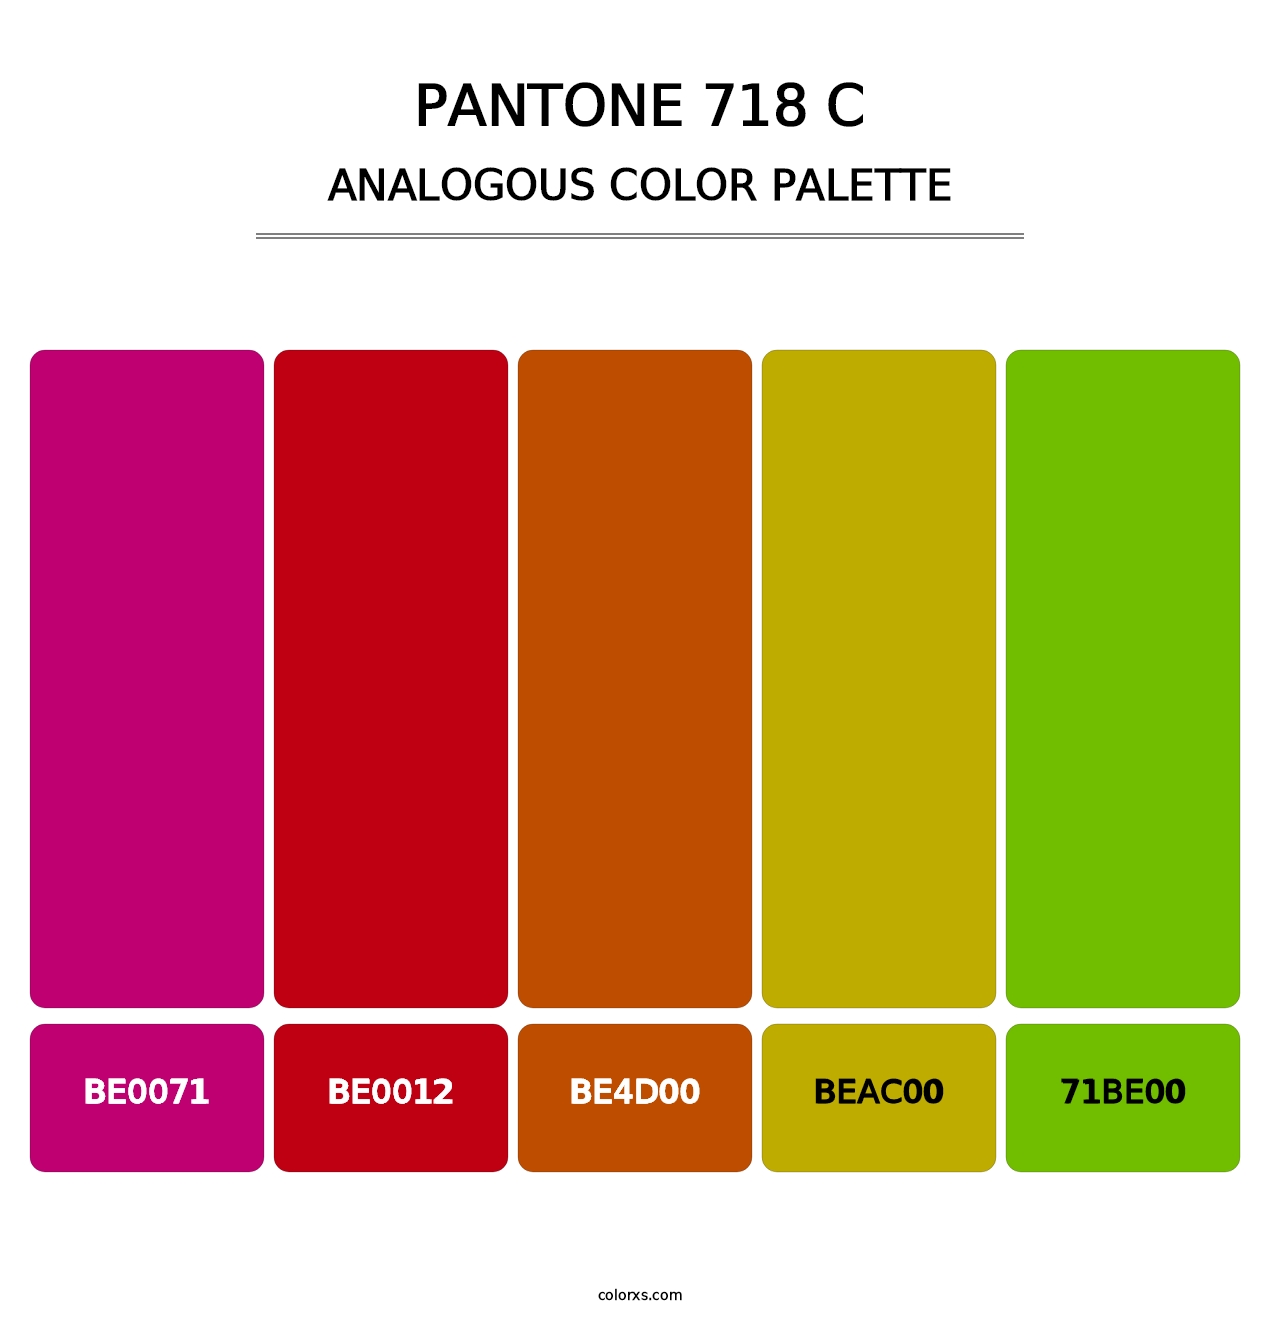 PANTONE 718 C - Analogous Color Palette